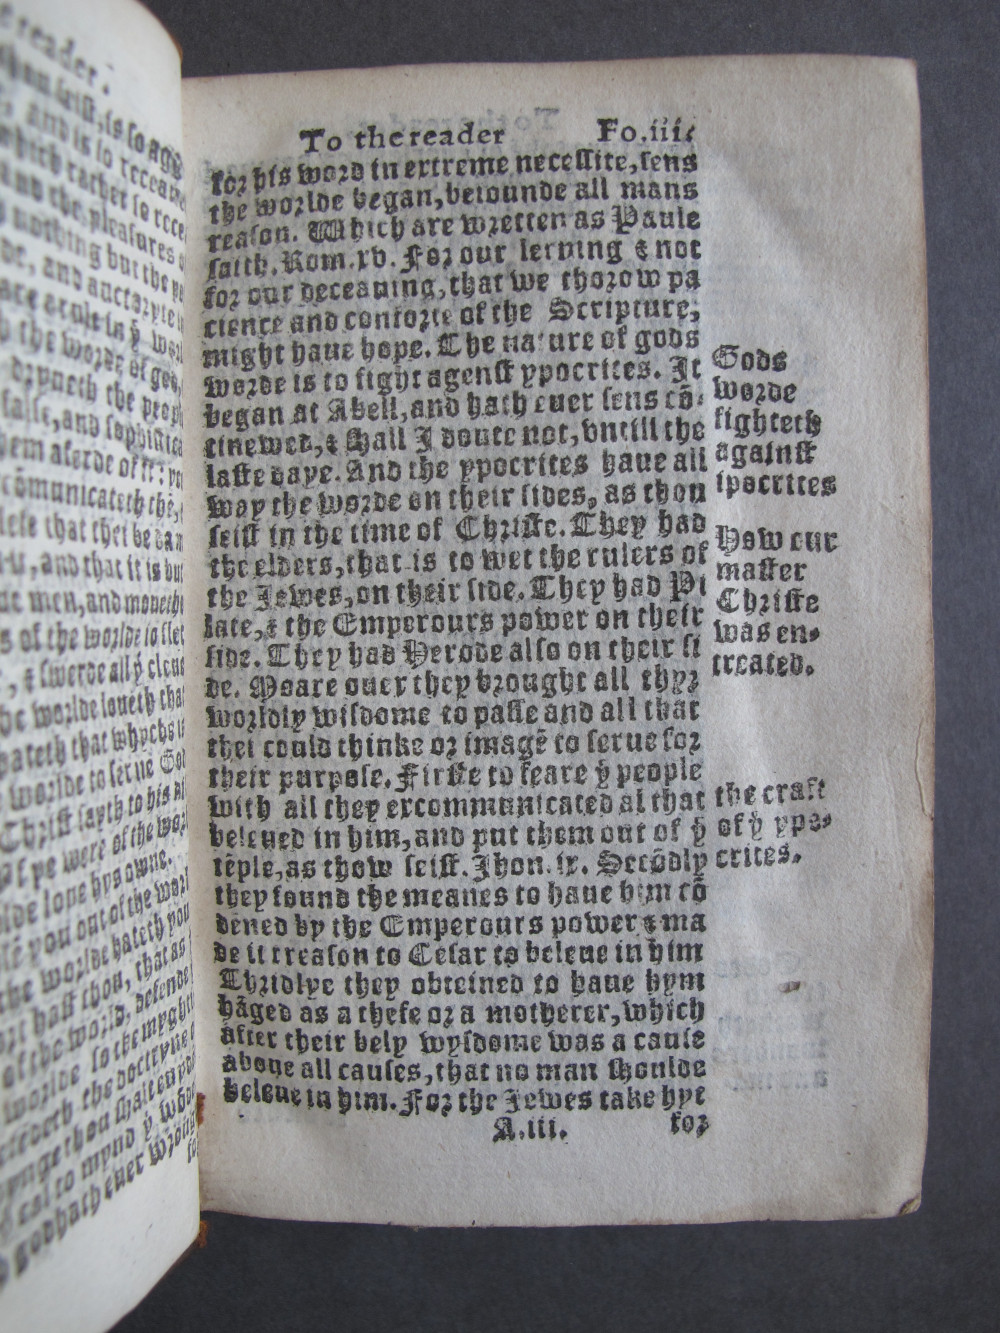 1 Folio A3 recto